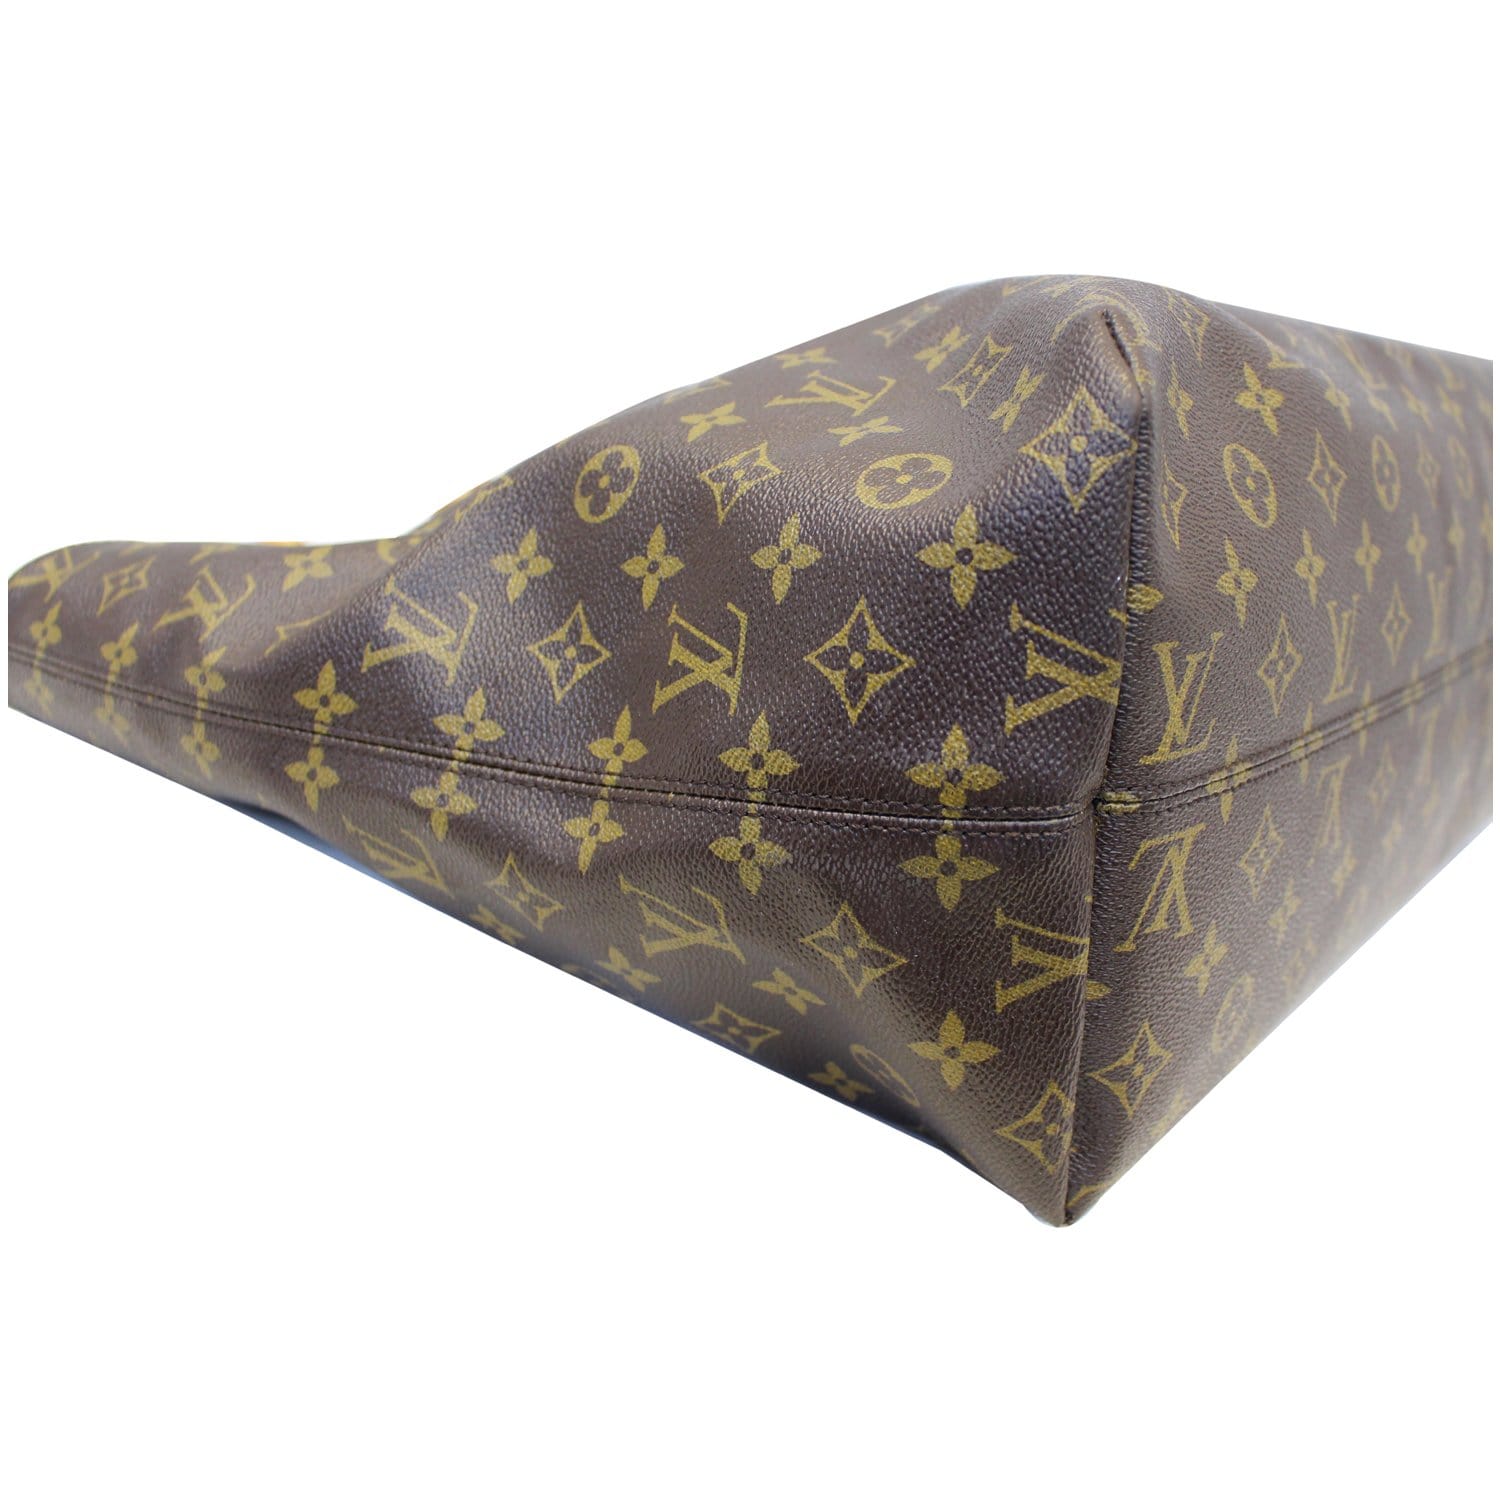 Louis Vuitton Raspail Handbag Monogram Canvas Brown 920161